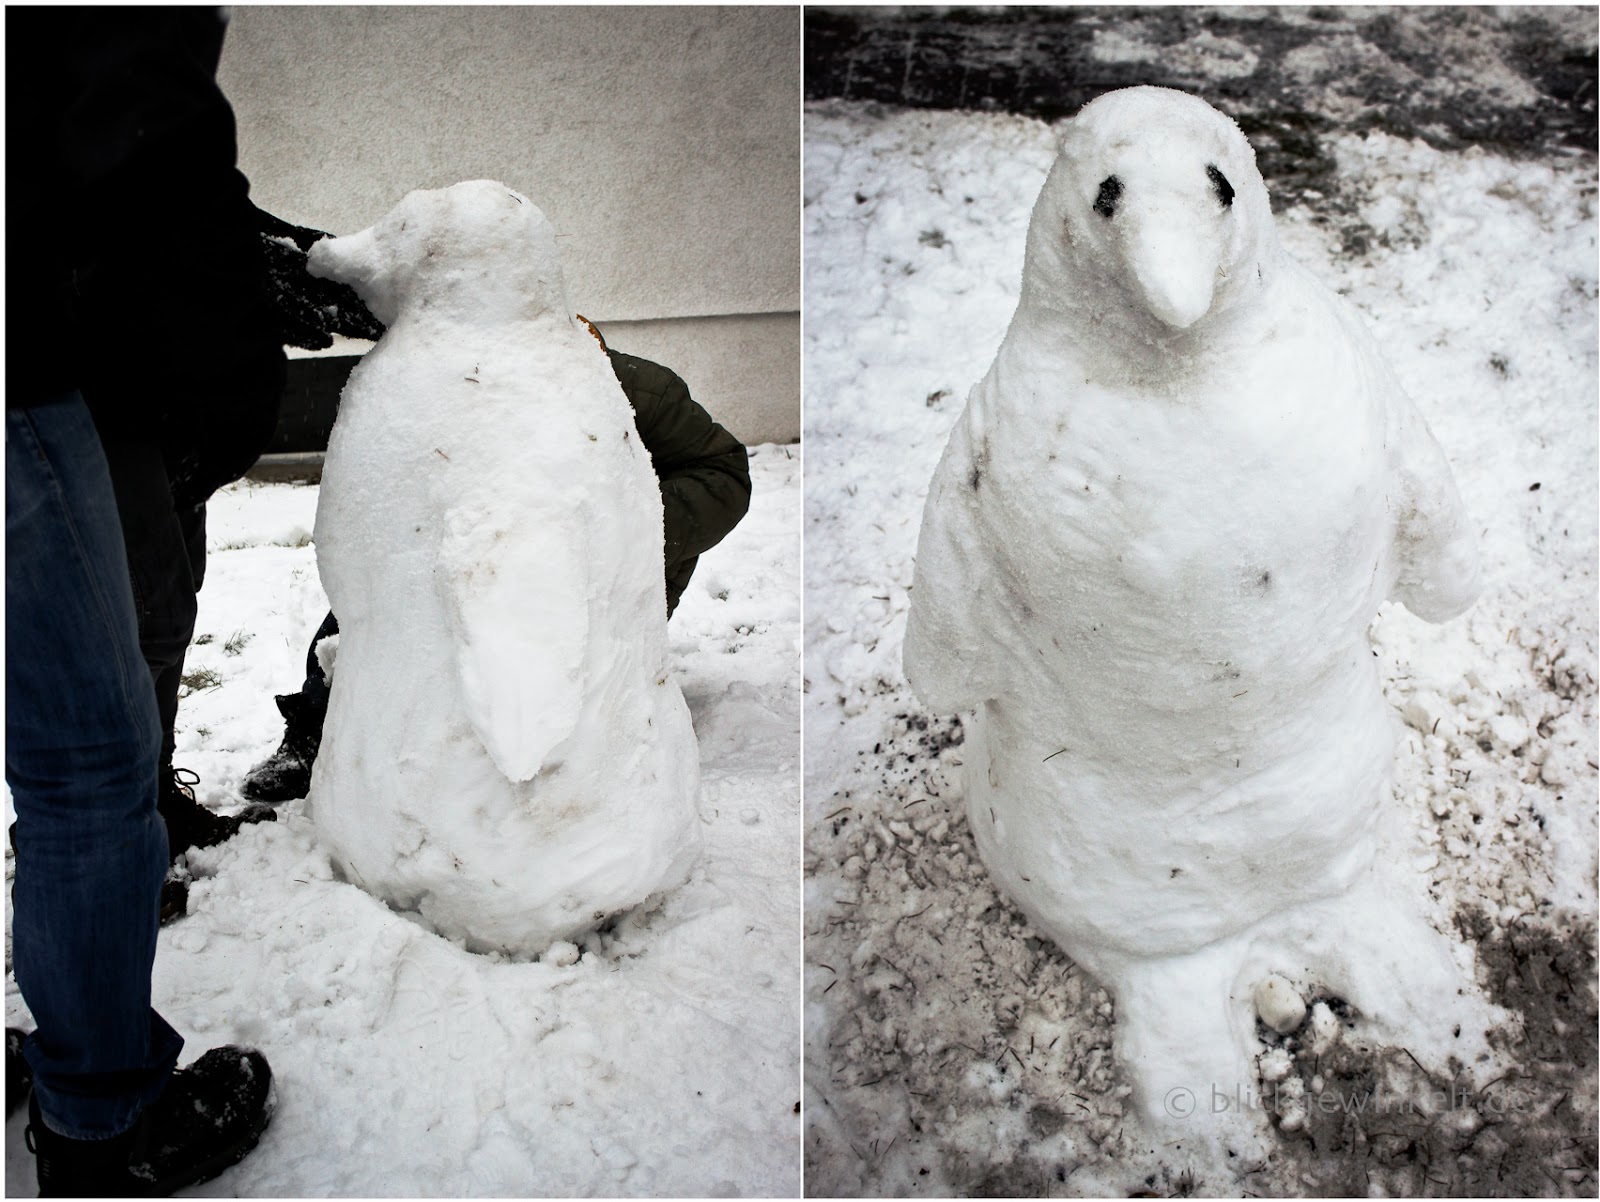 Pinguin aus Schnee bauen